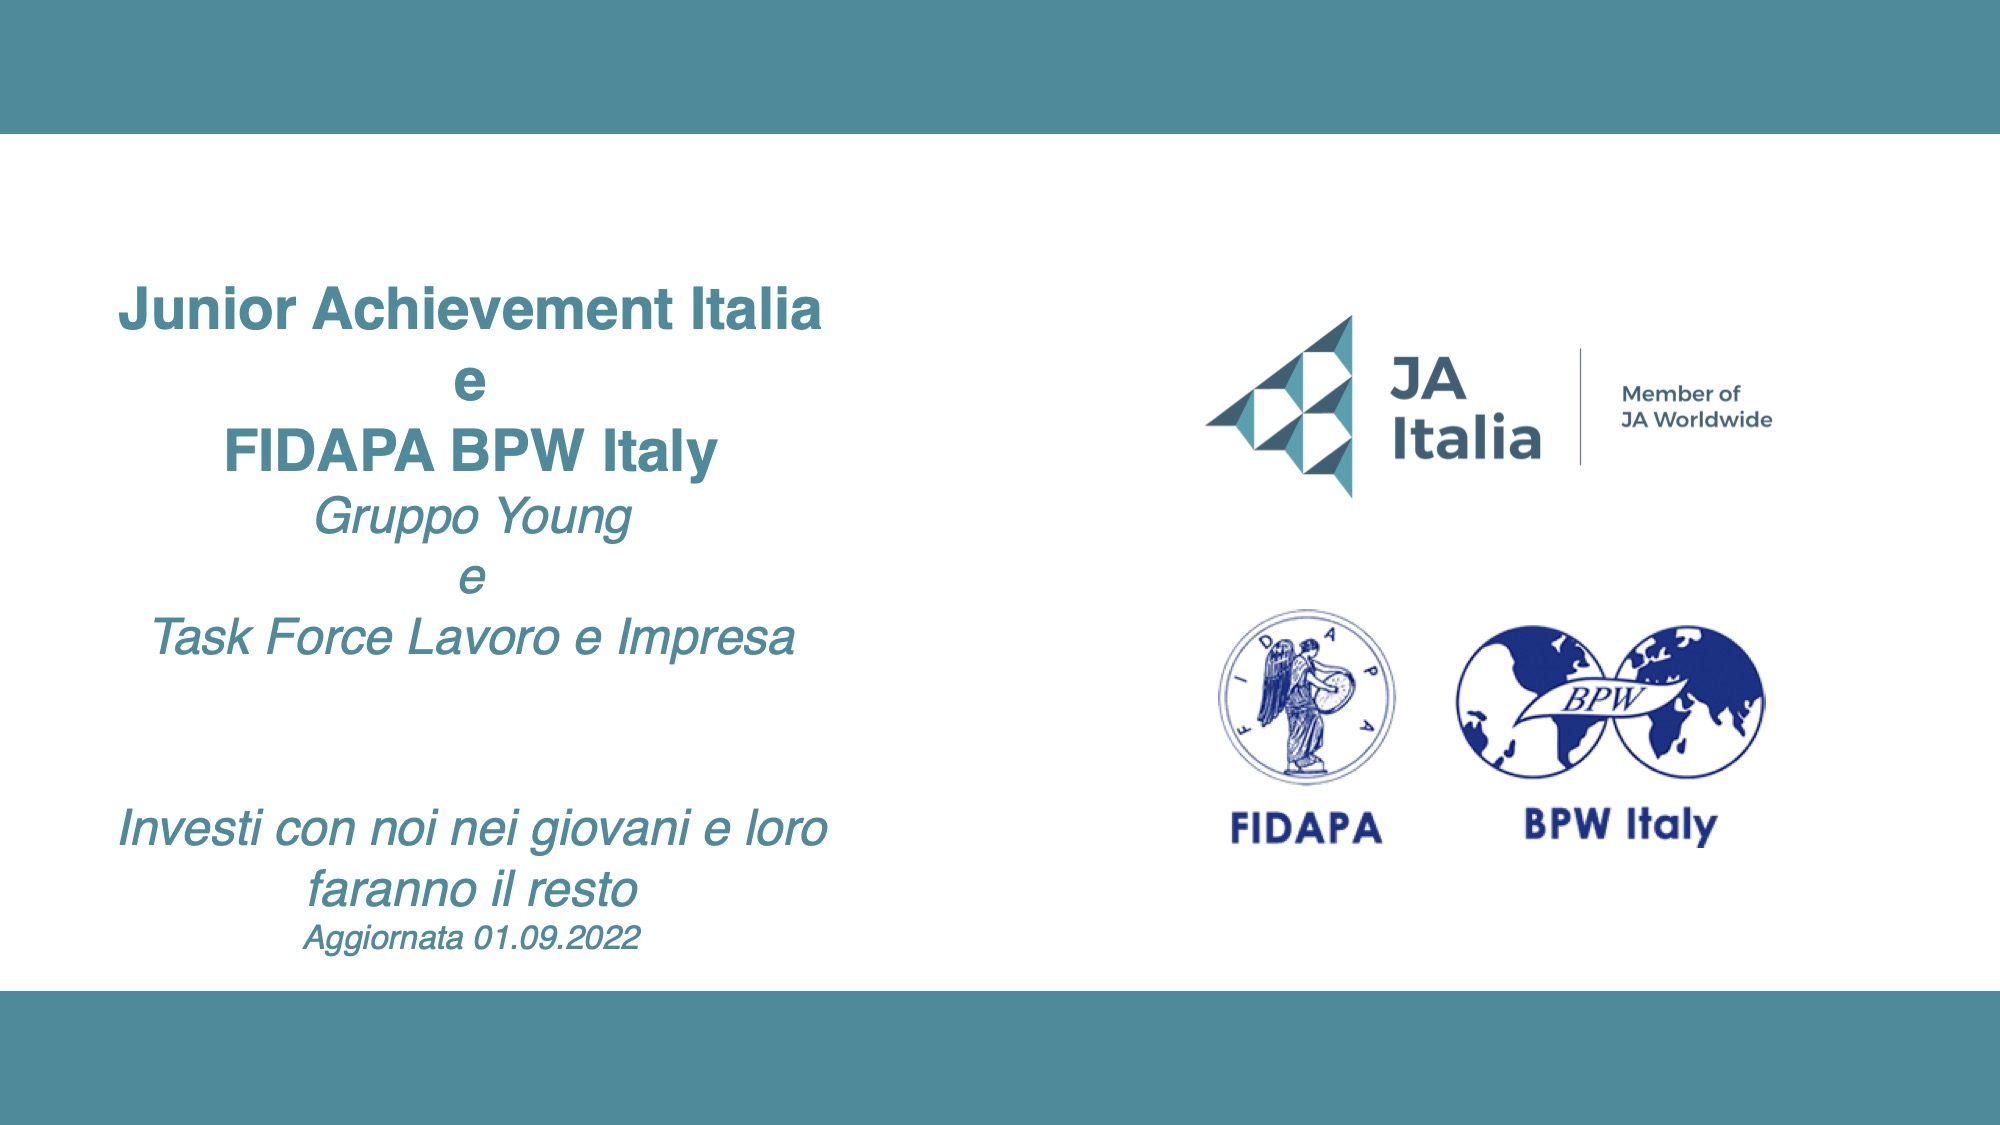 New Project - FIDAPA BPW Italy and JAItalia an educational alliance